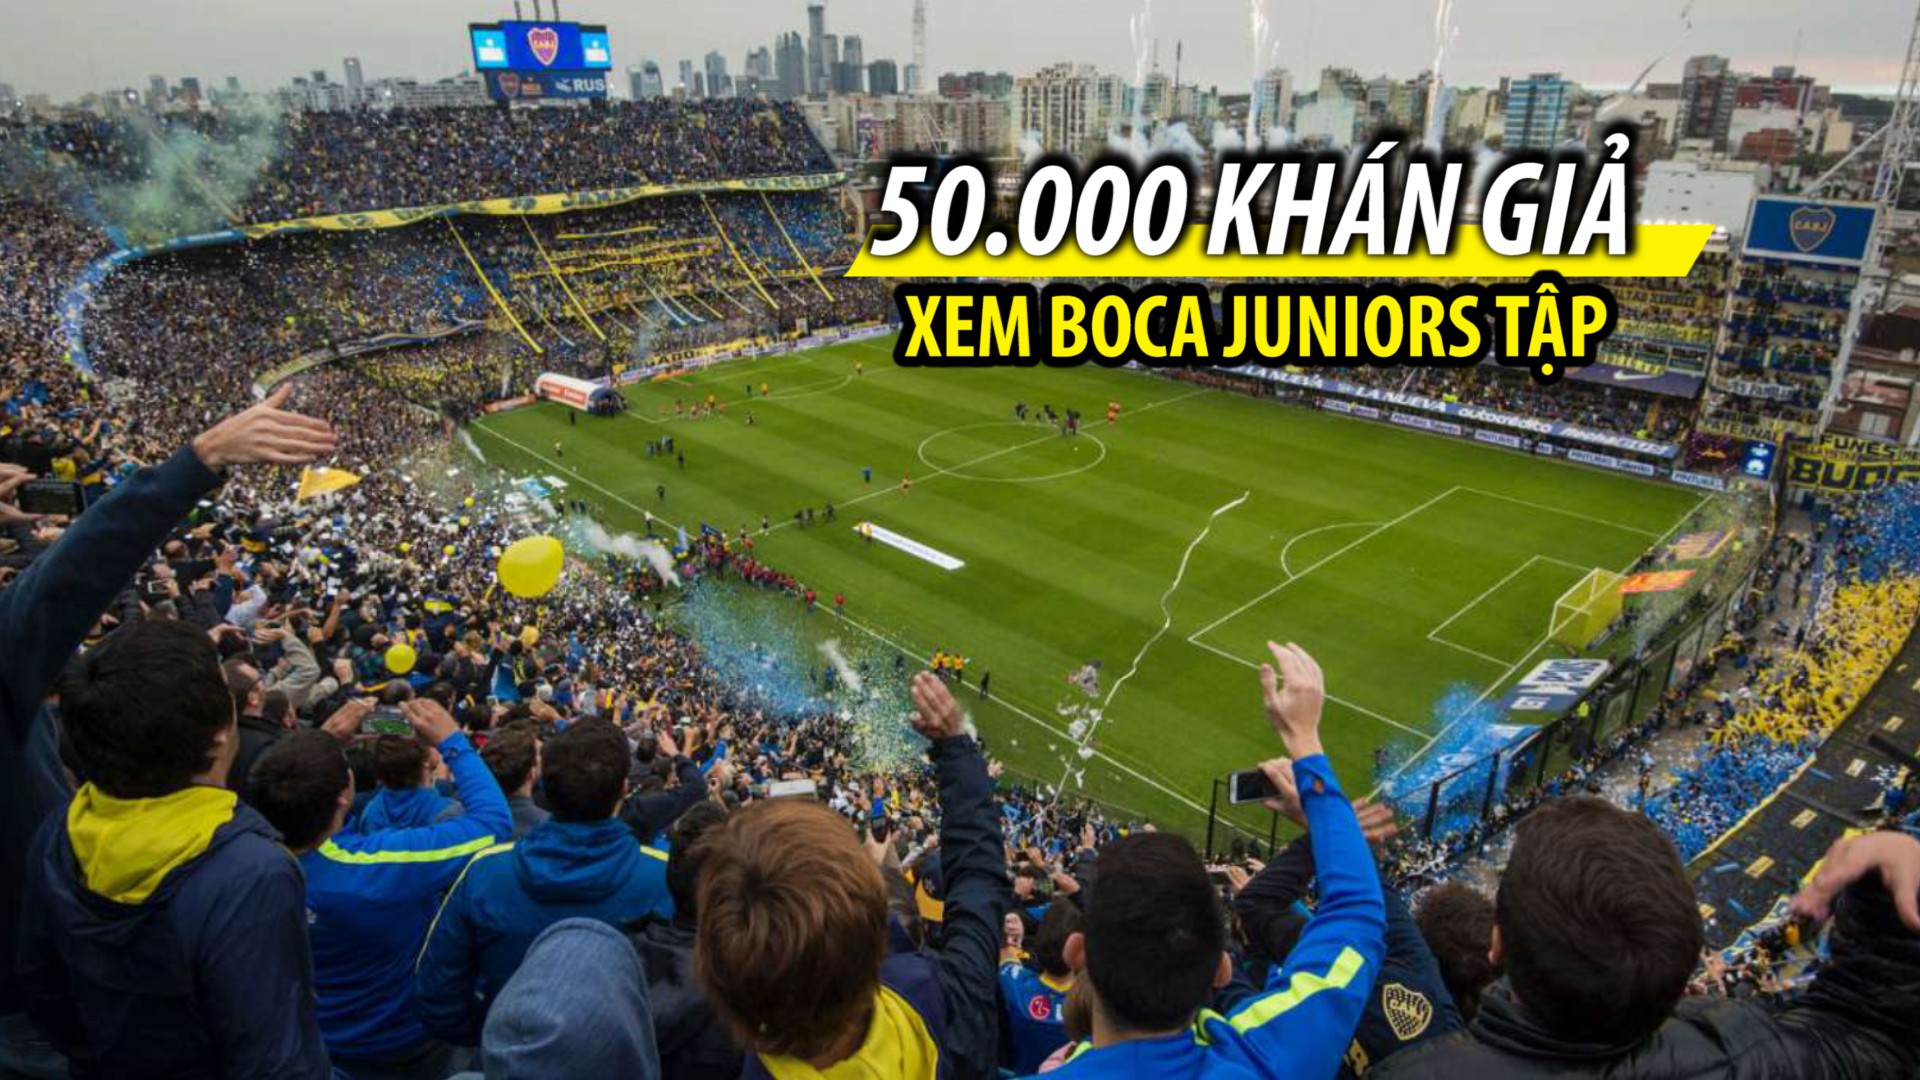 000 Khán Giả Chen Lấnchỉ Để Xem Boca Juniors Tập Luyện - Boca Juniors Stadium Training , HD Wallpaper & Backgrounds